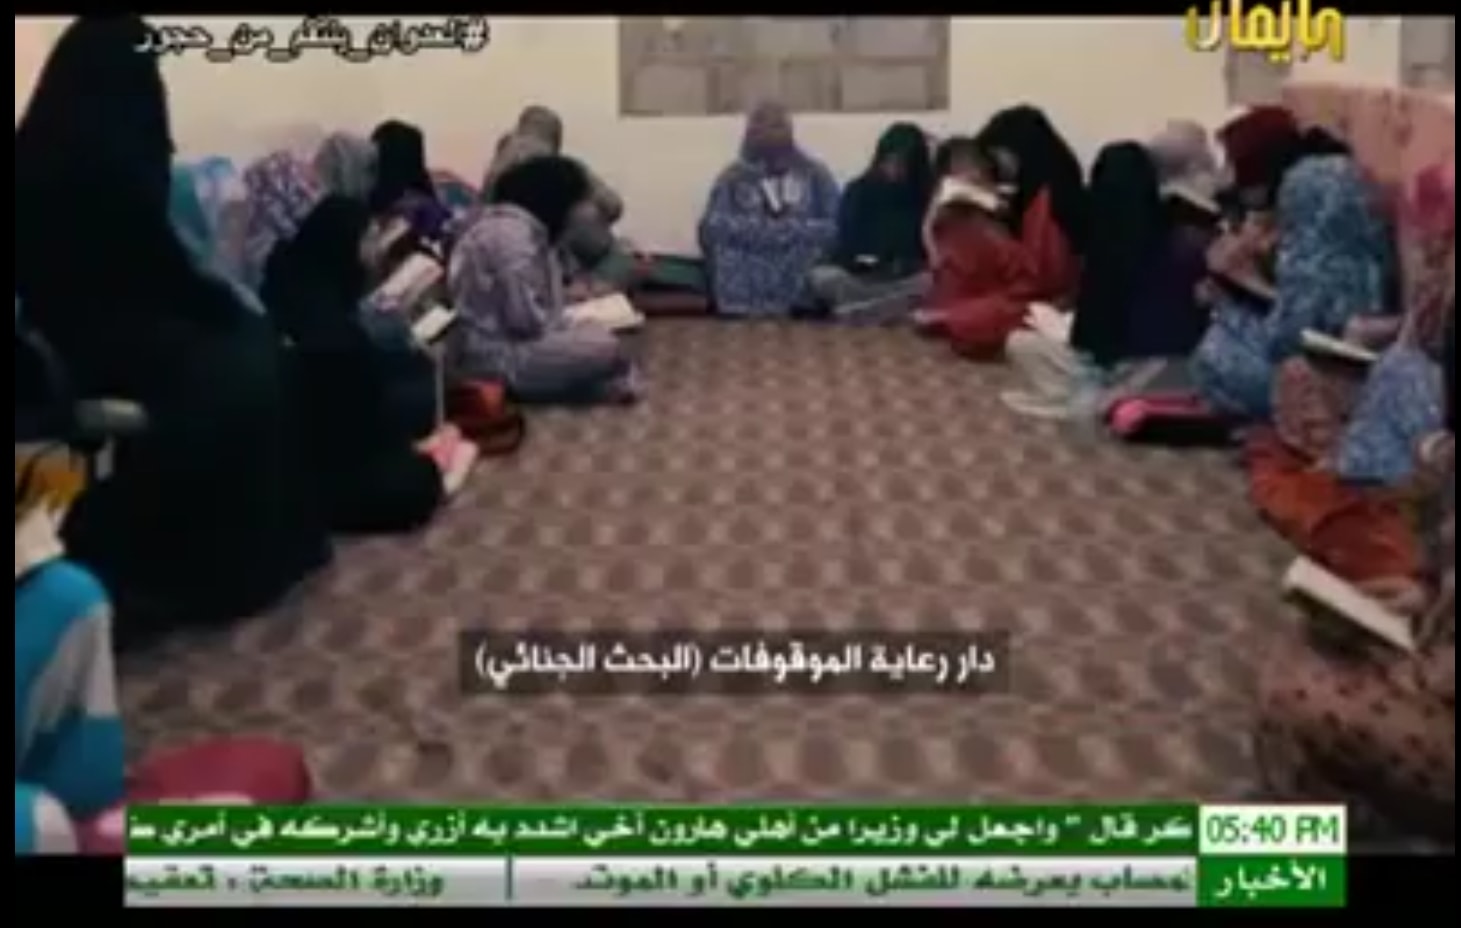 مصدر حقوقي: الحوثيون أحالوا 55 امرأة للنيابة بتهم الدعارة من إجمالي 162 امرأة مختطفه لديهم